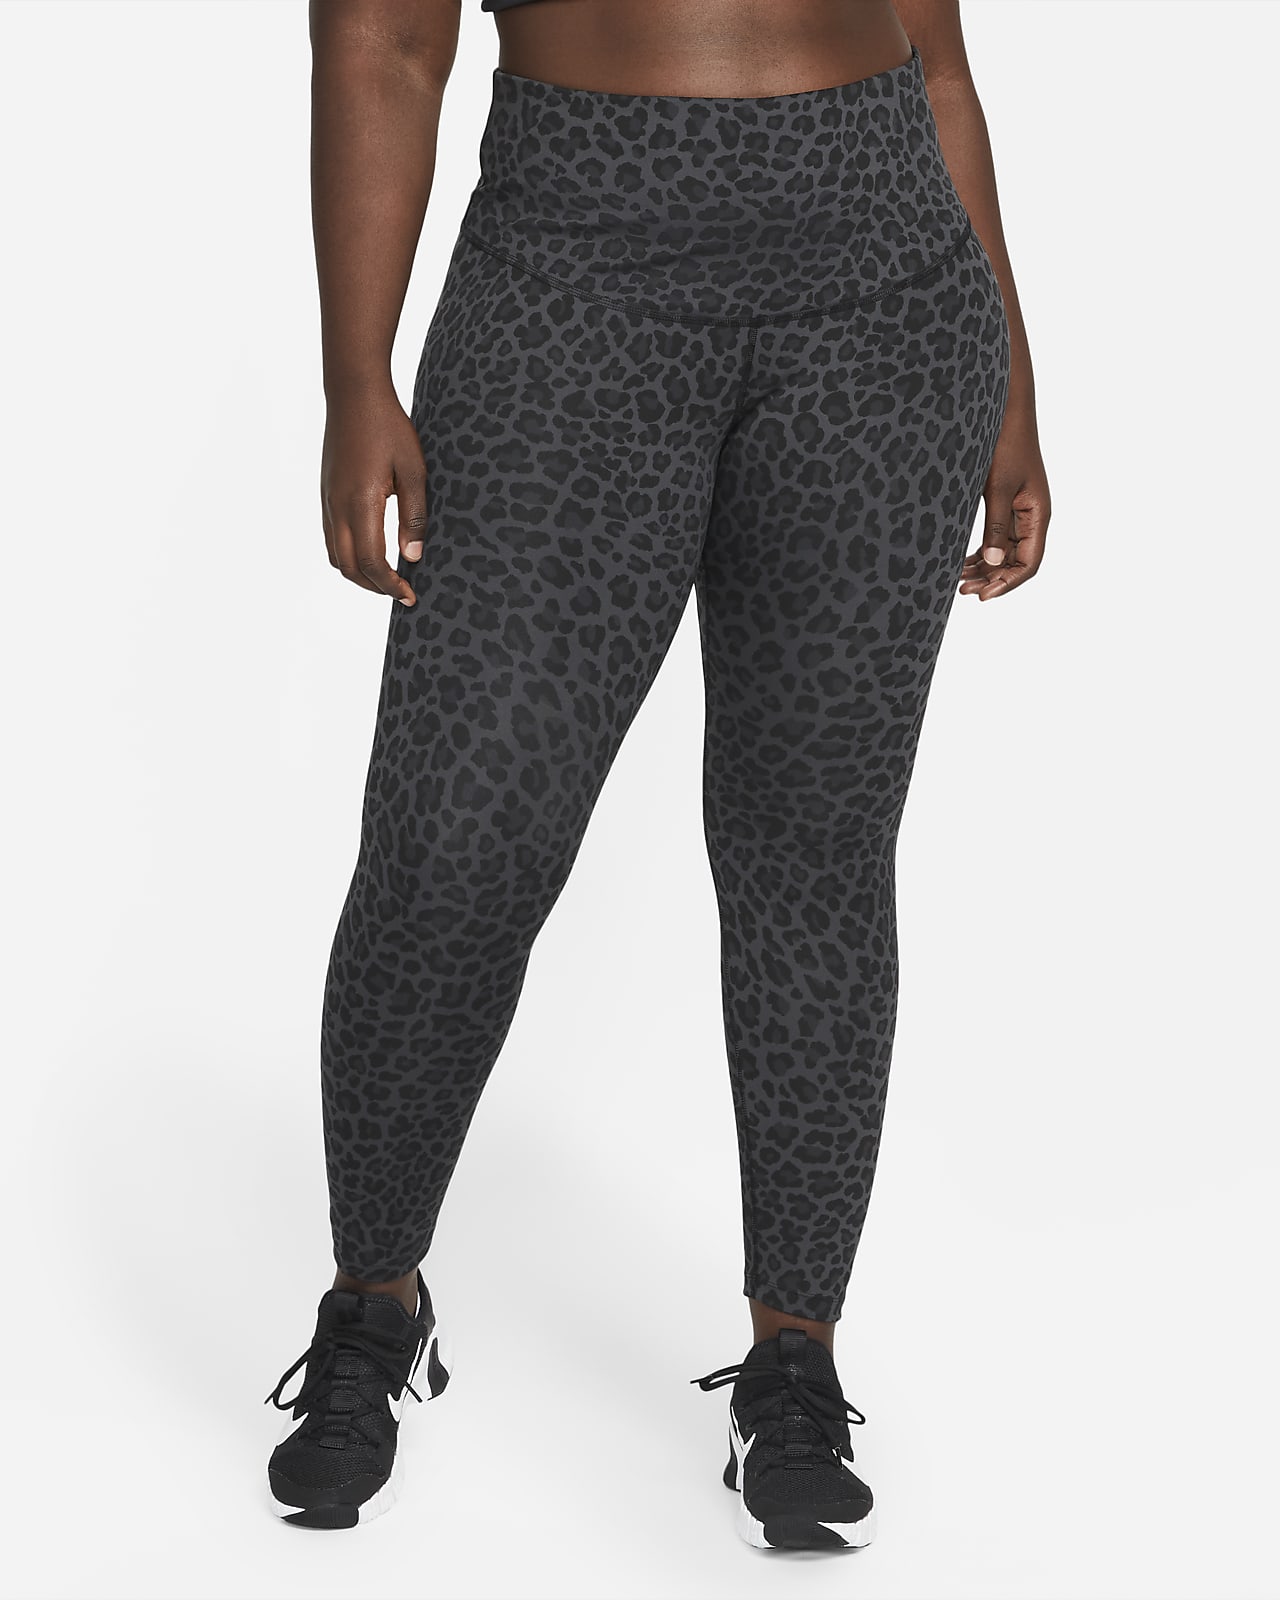 Nike Dri-FIT One Leggings mit hohem Bund und Print für Damen (große Größe)